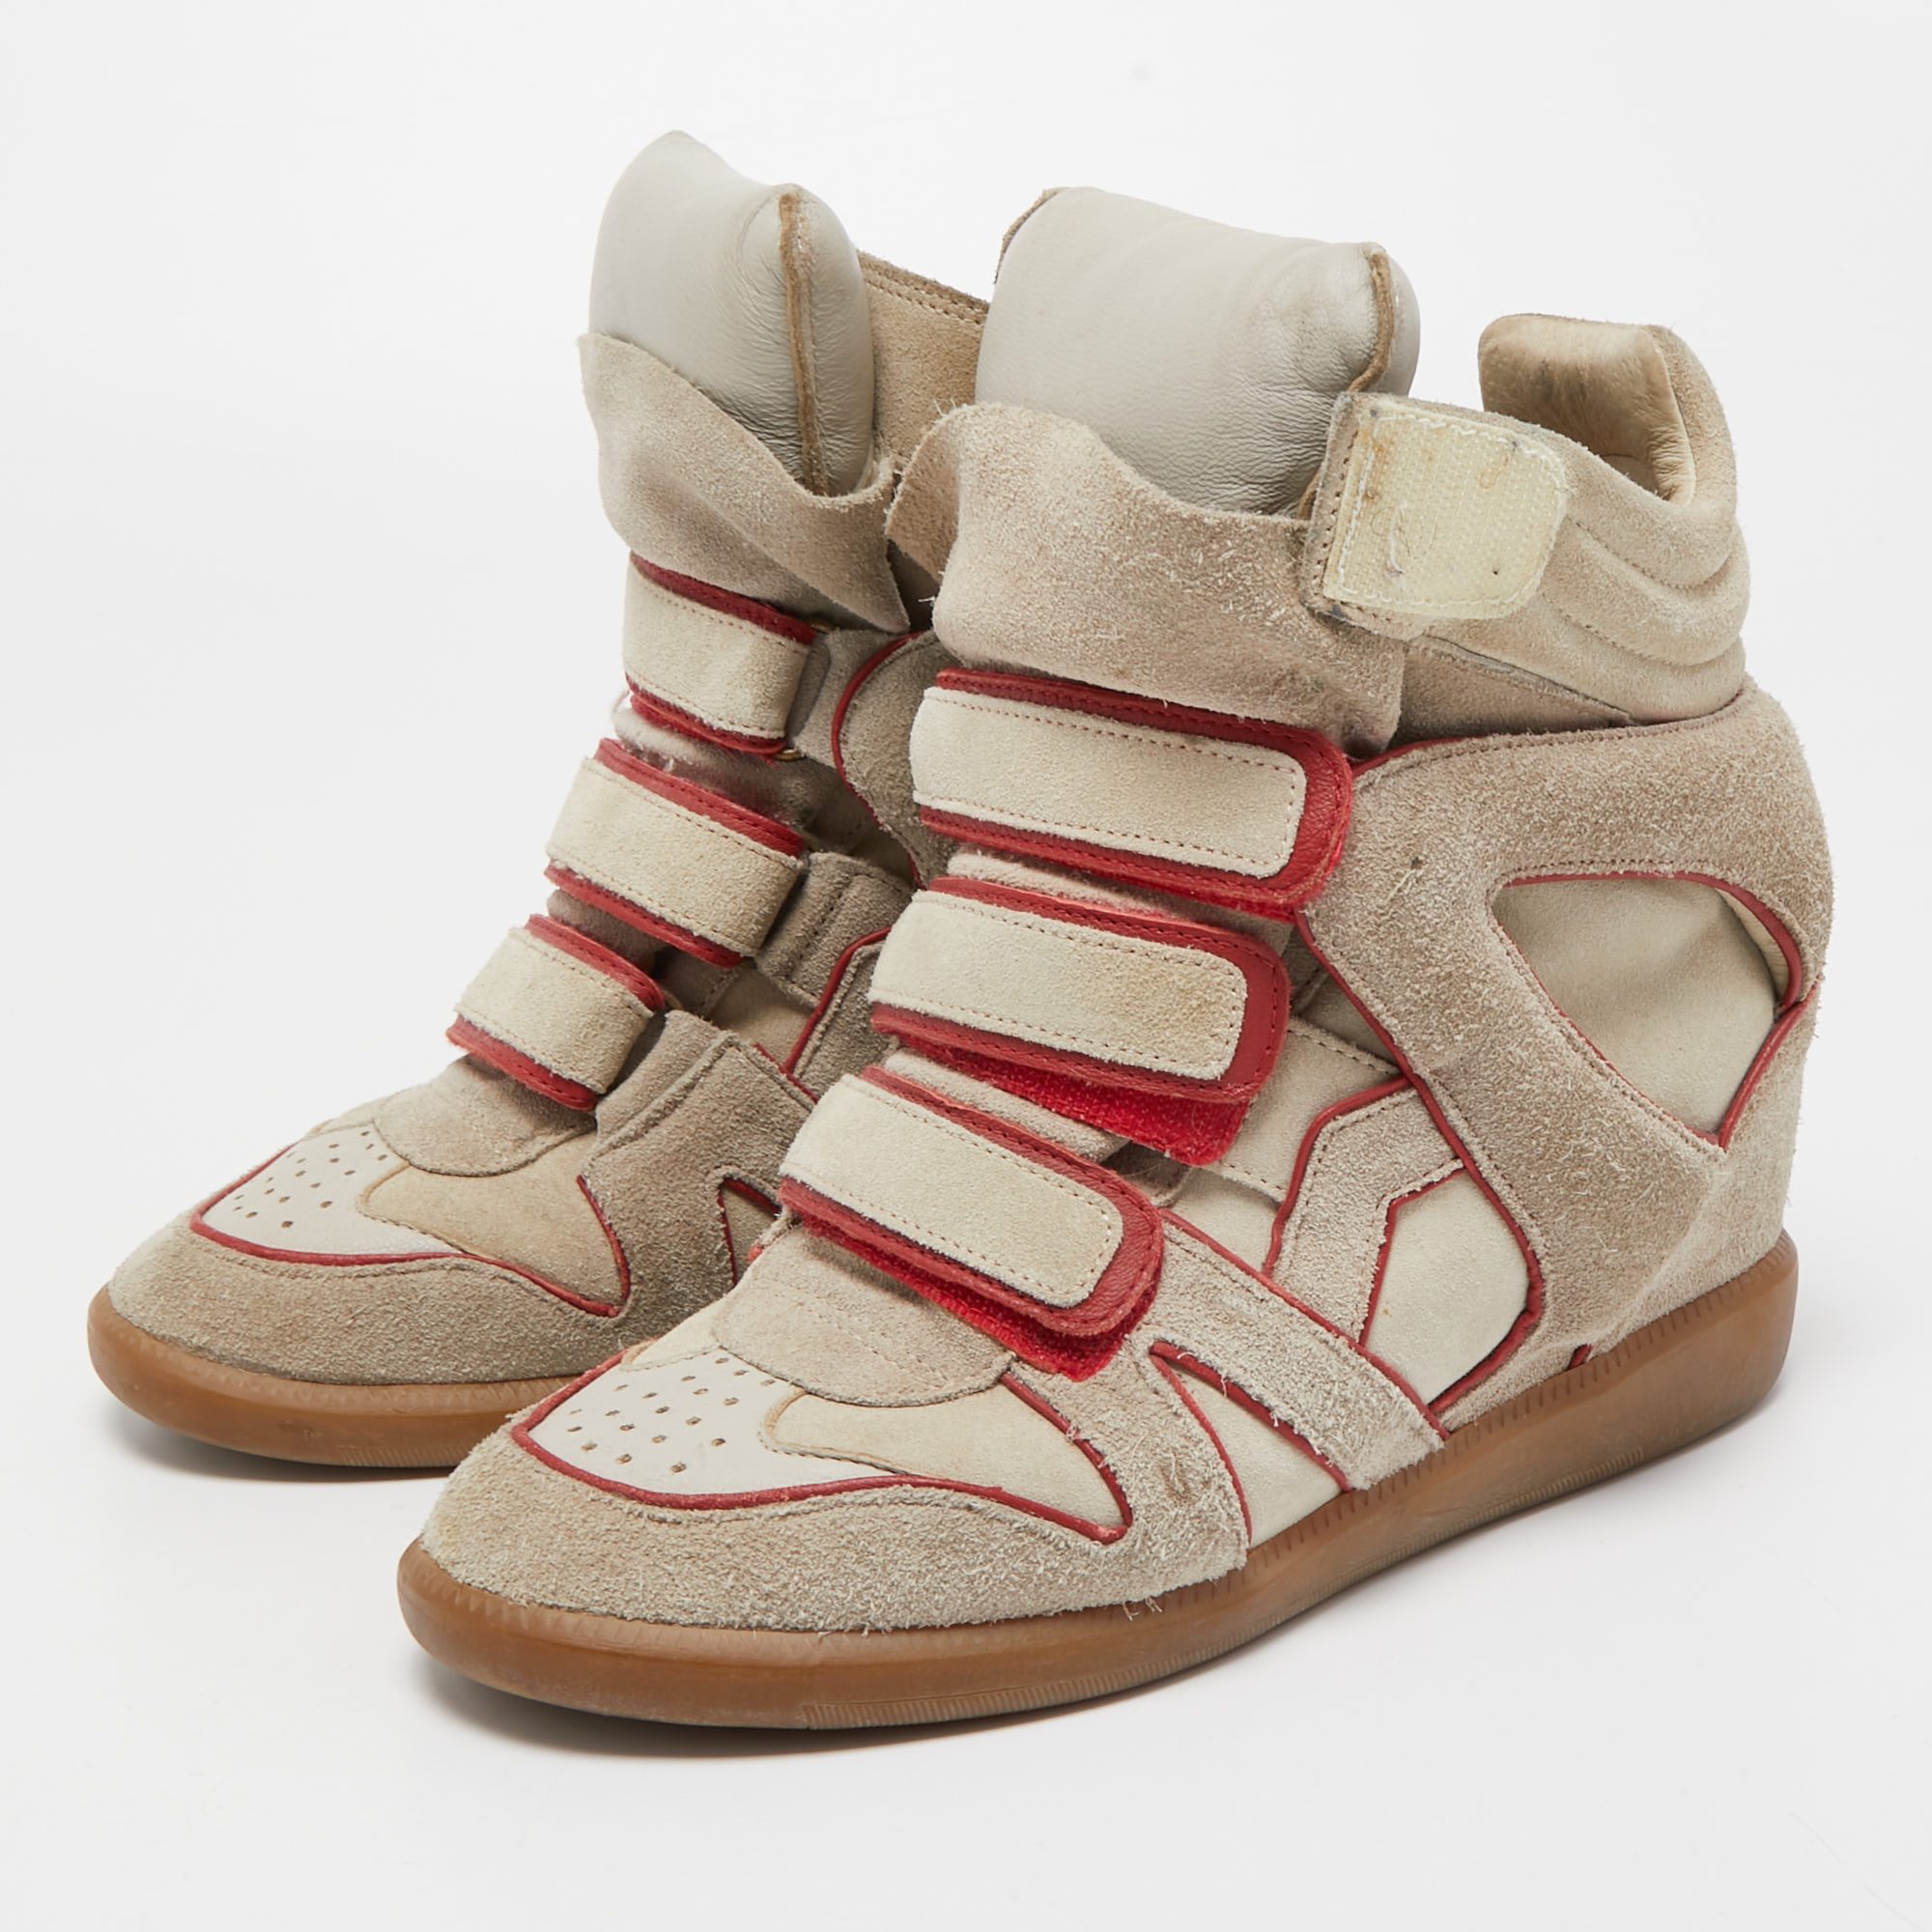 

Isabel Marant Grey/Red Suede Bekett Wedge Sneakers Size